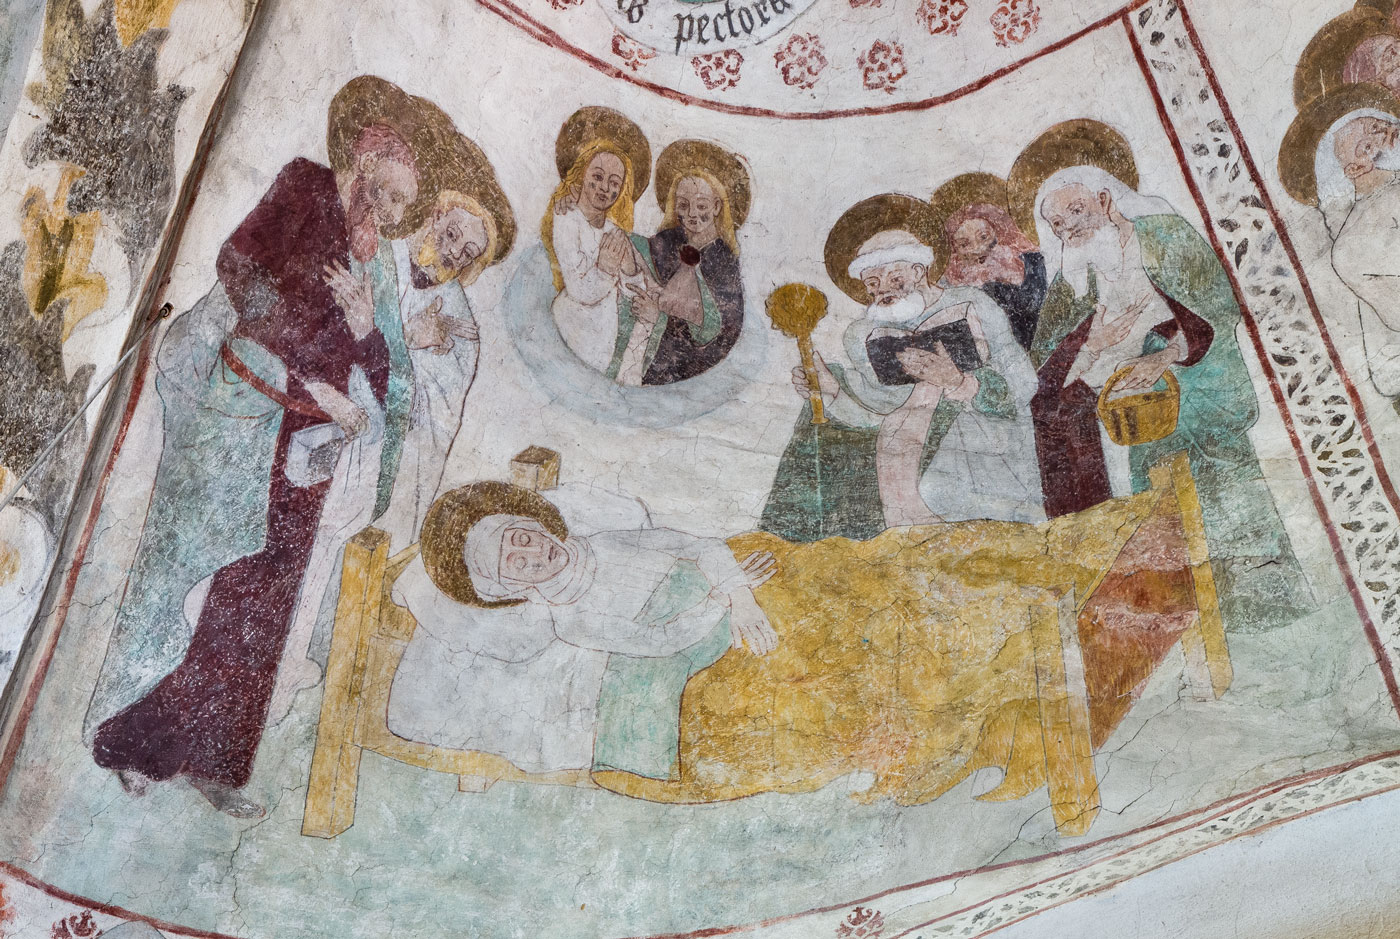 Marias död och där ovanför Maria och Kristus i molnkrans (V) - Vänge kyrka